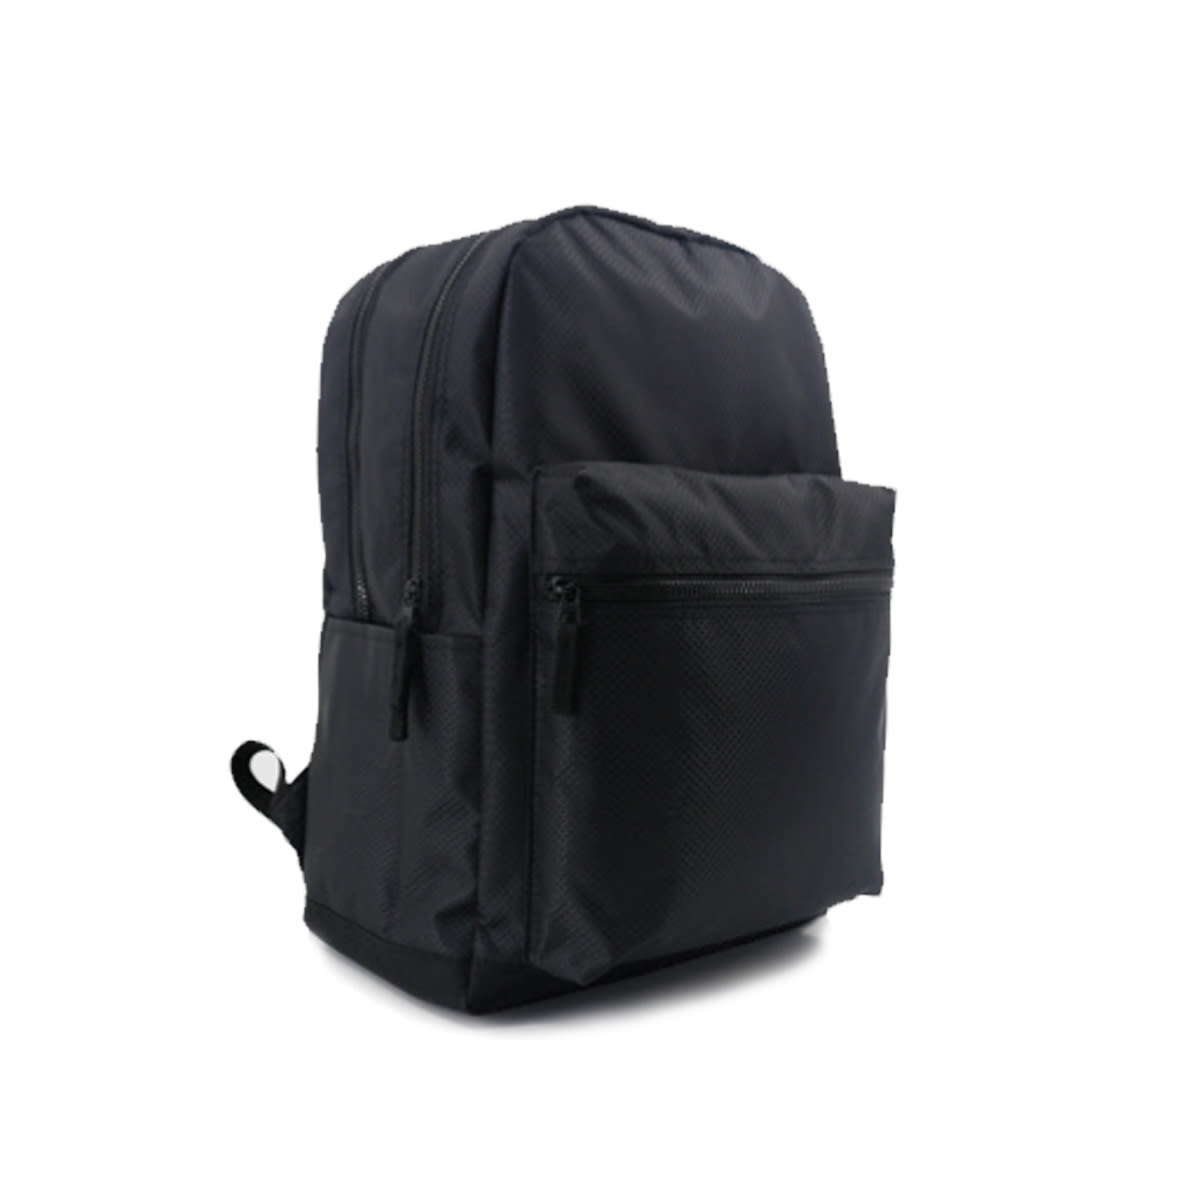 24.5L Youth Backpack - Black - Kmart